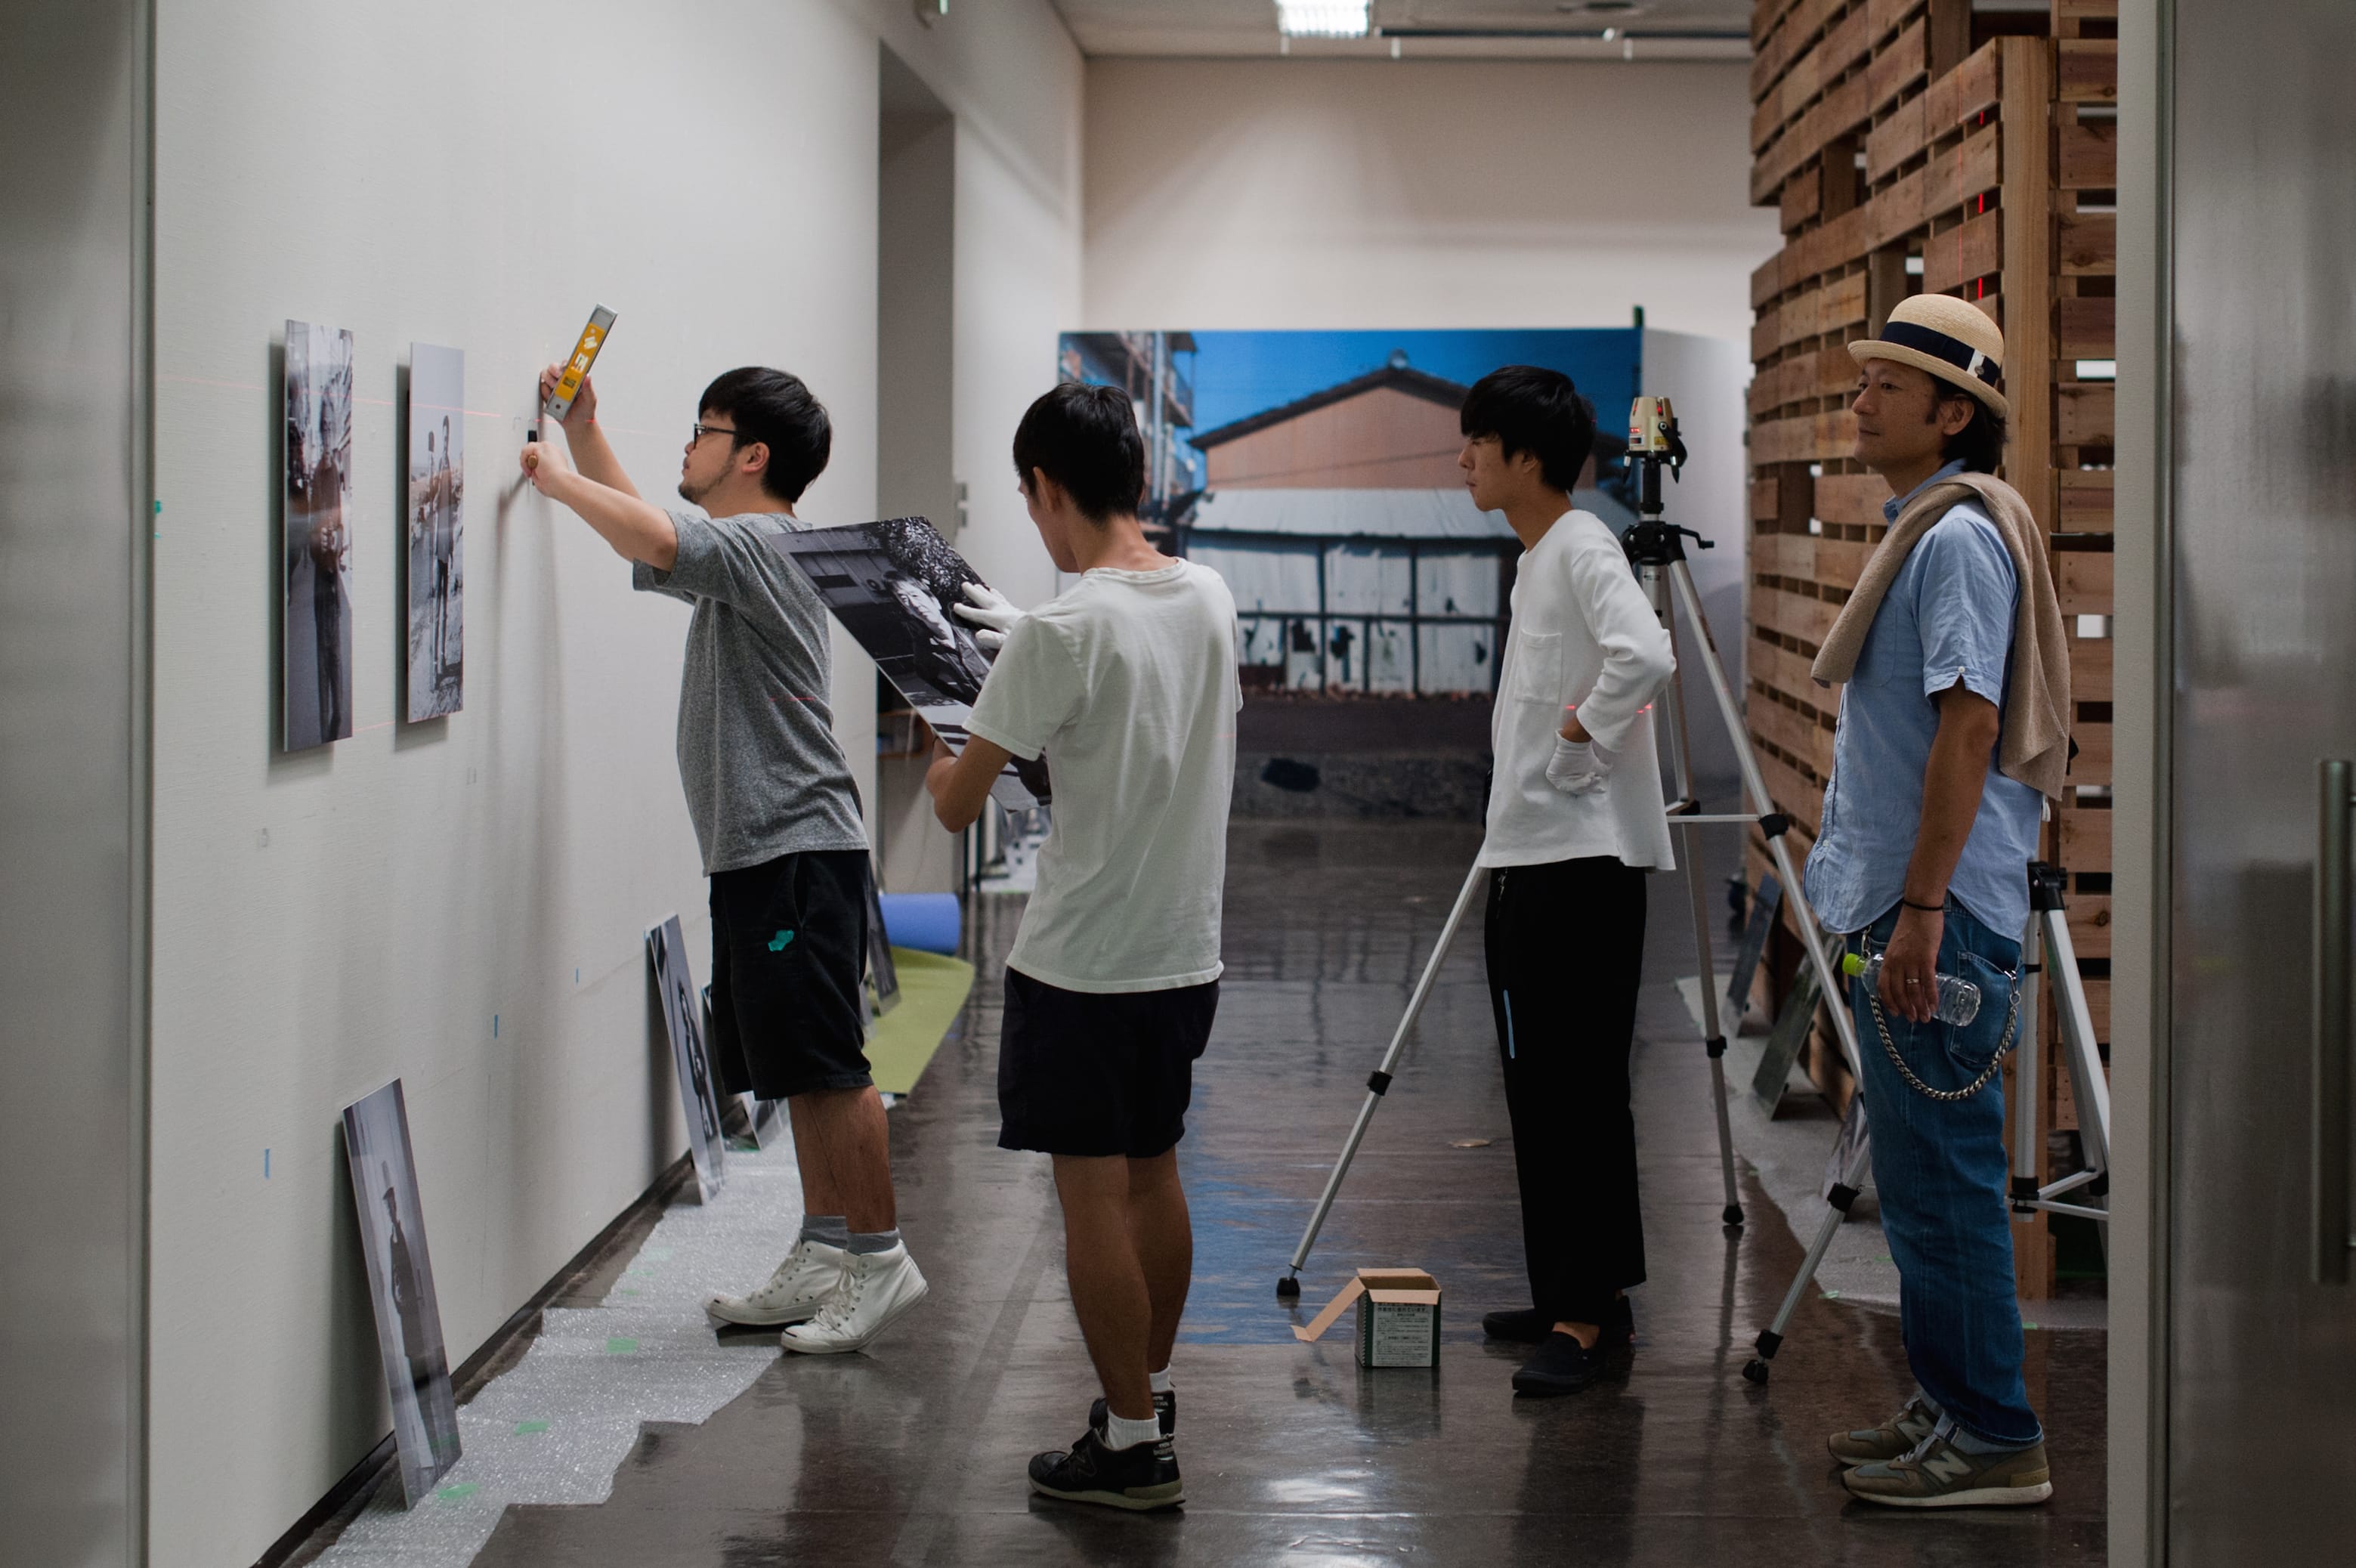 浜松市美術館にて9月5日から始まる展覧会「Come & Go」の設営風景。